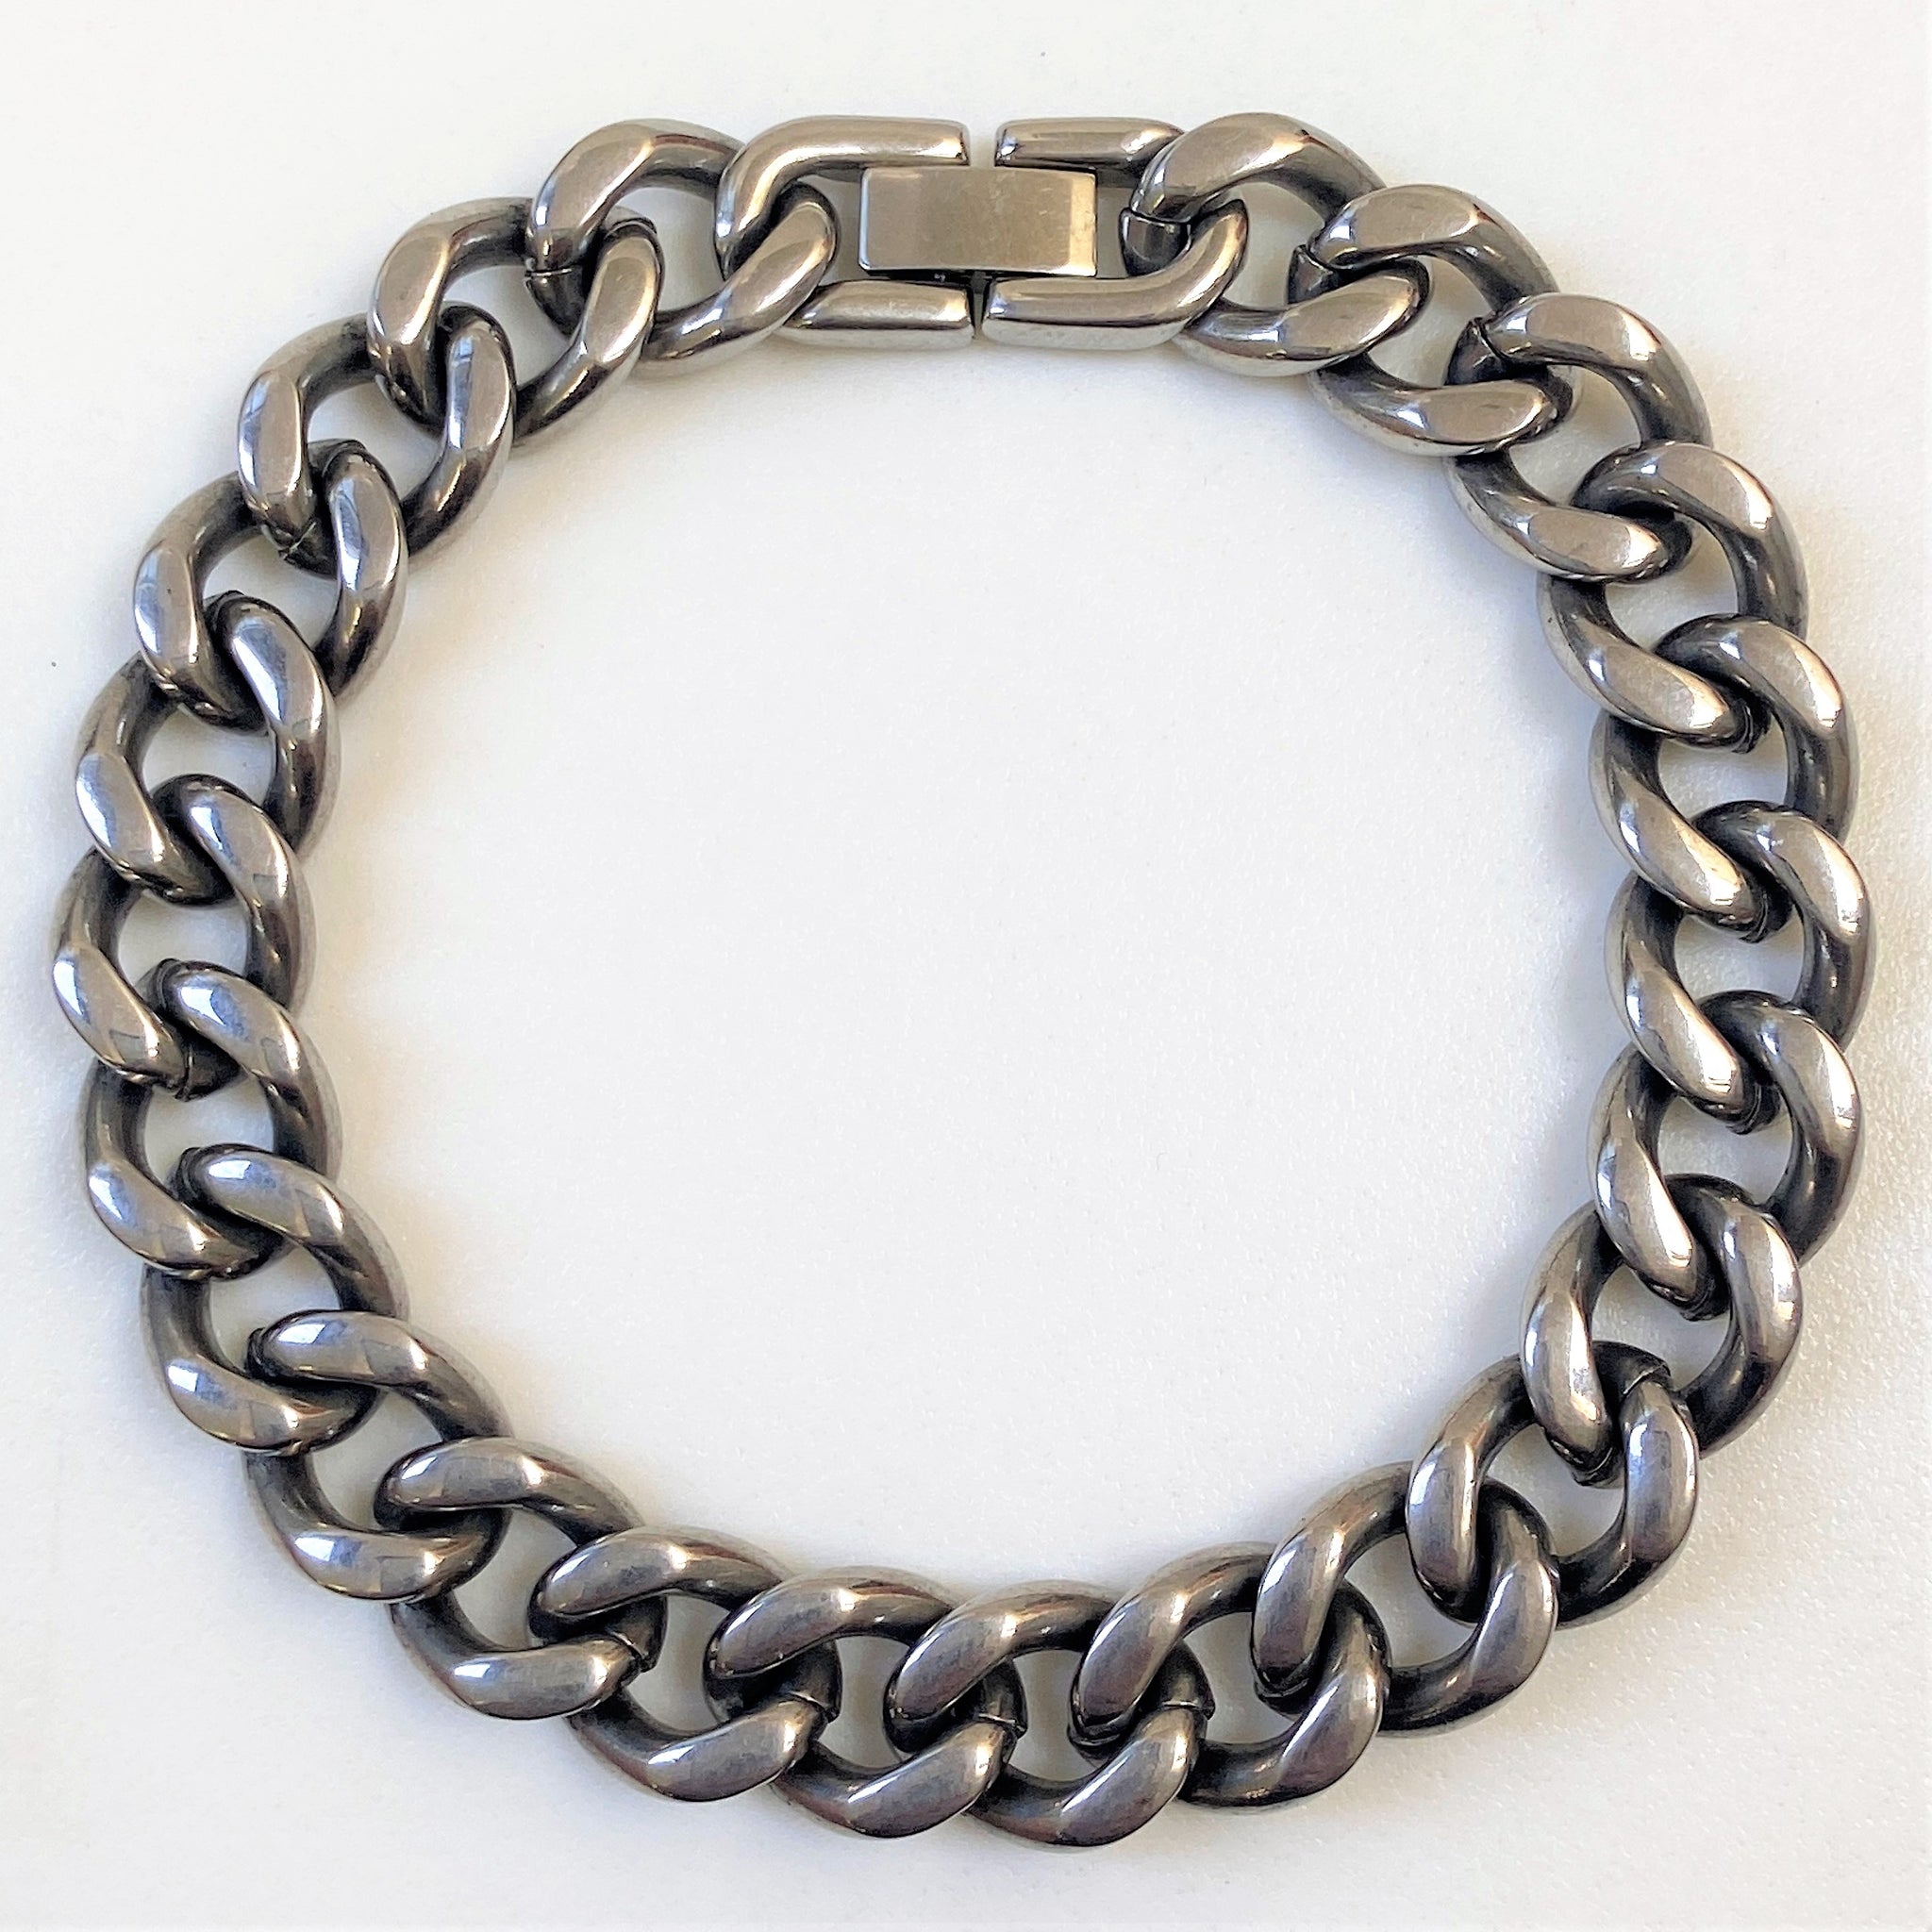 Stainless Steel Man’s Bracelet